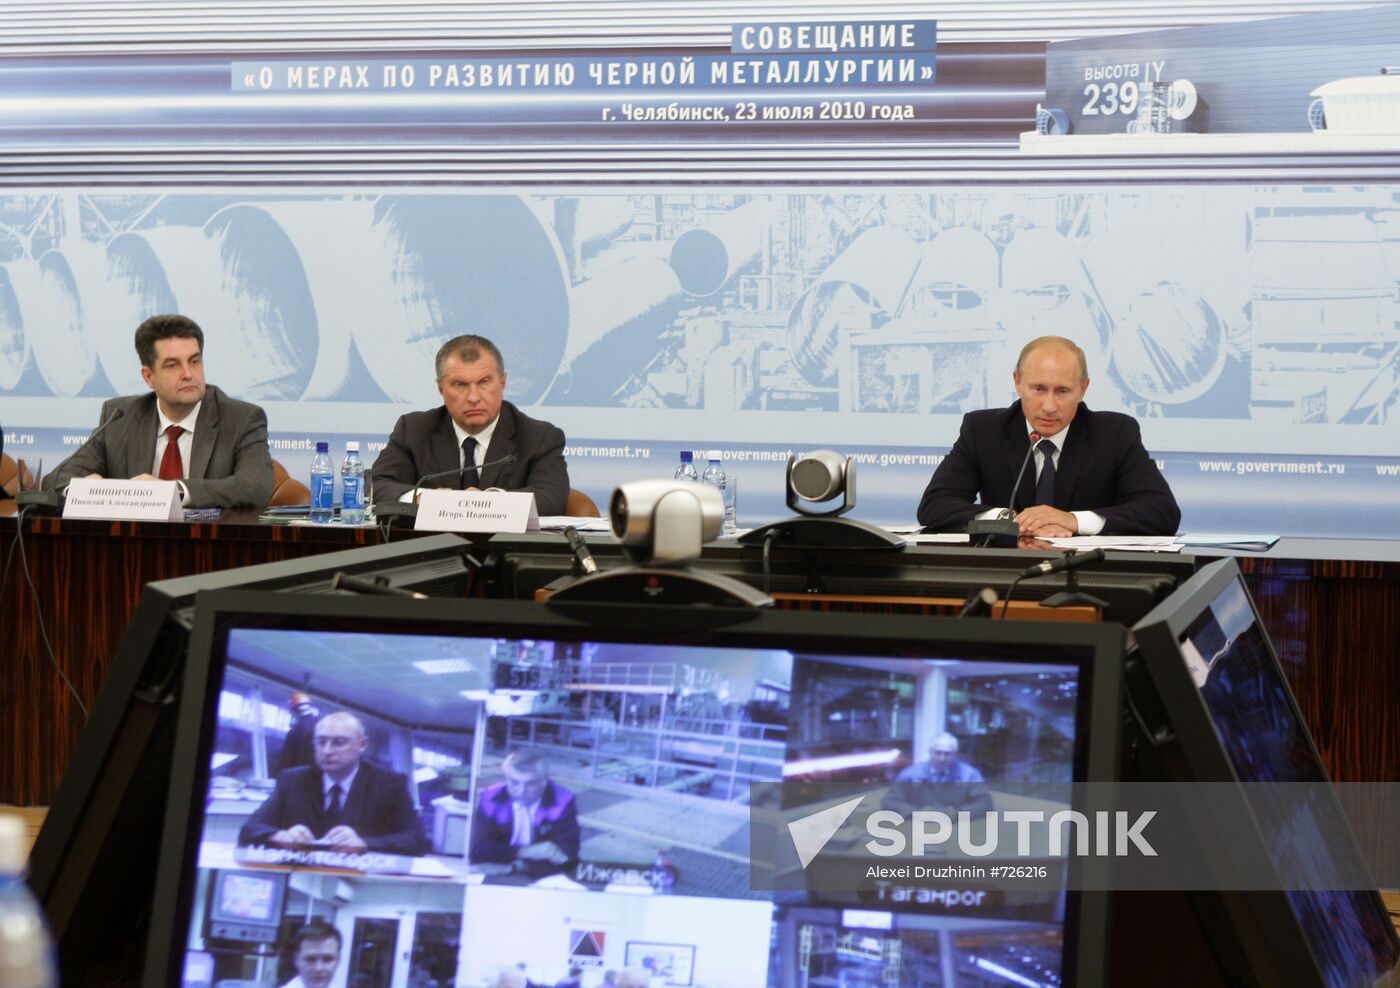 Vladimir Putin, Igor Sechin and Nikolai Vinnichenko